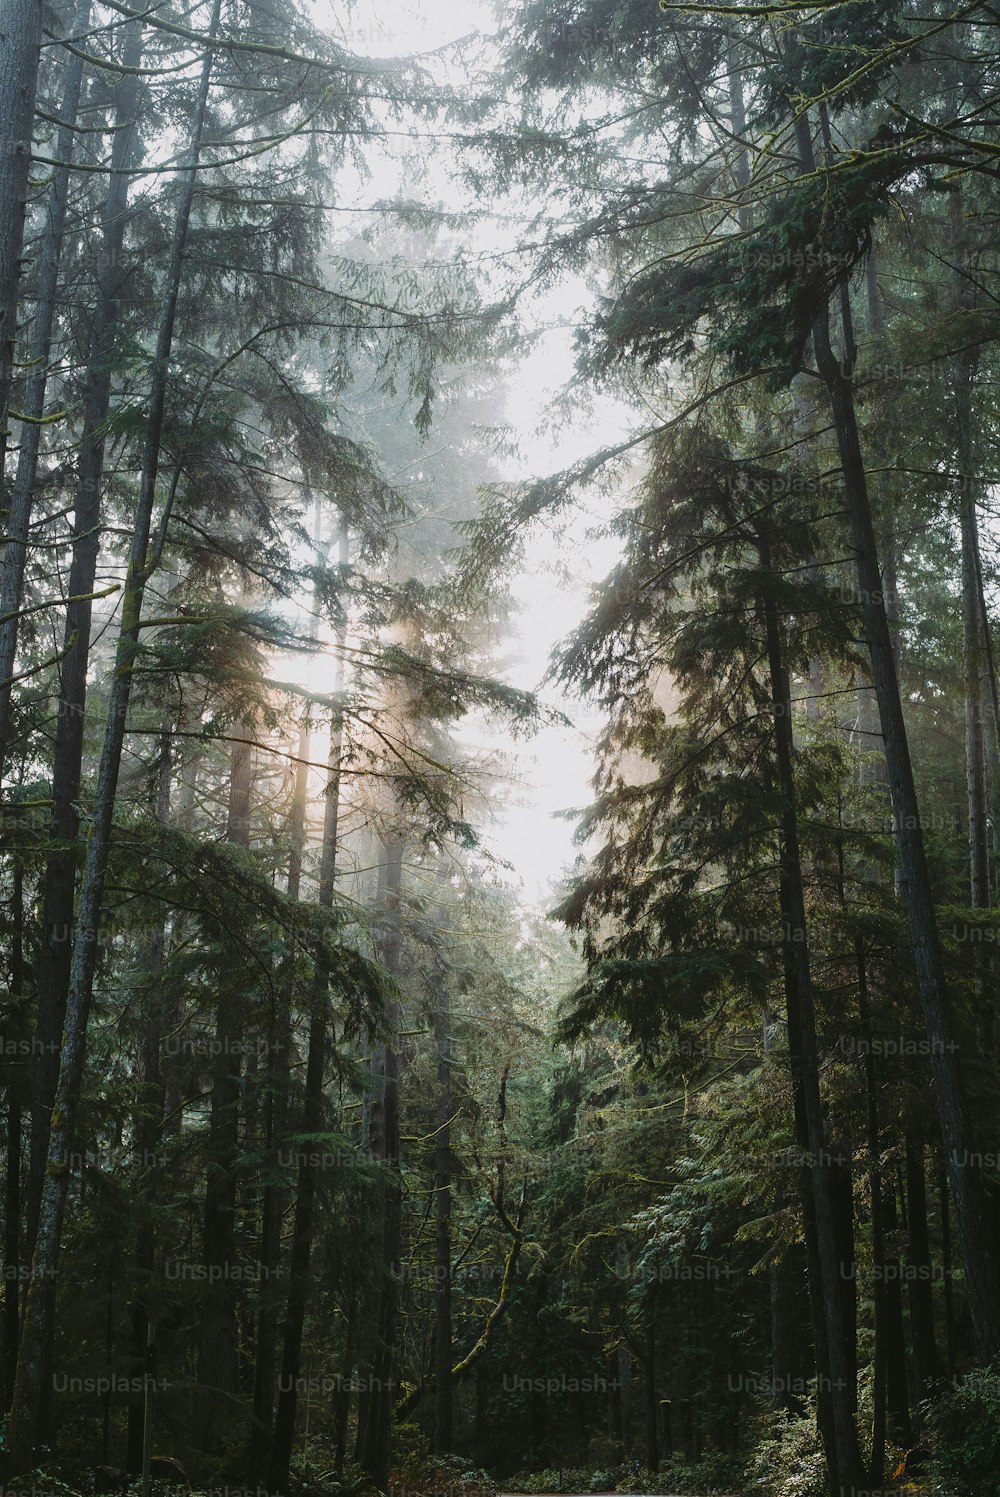 Un camino en medio de un bosque rodeado de árboles altos